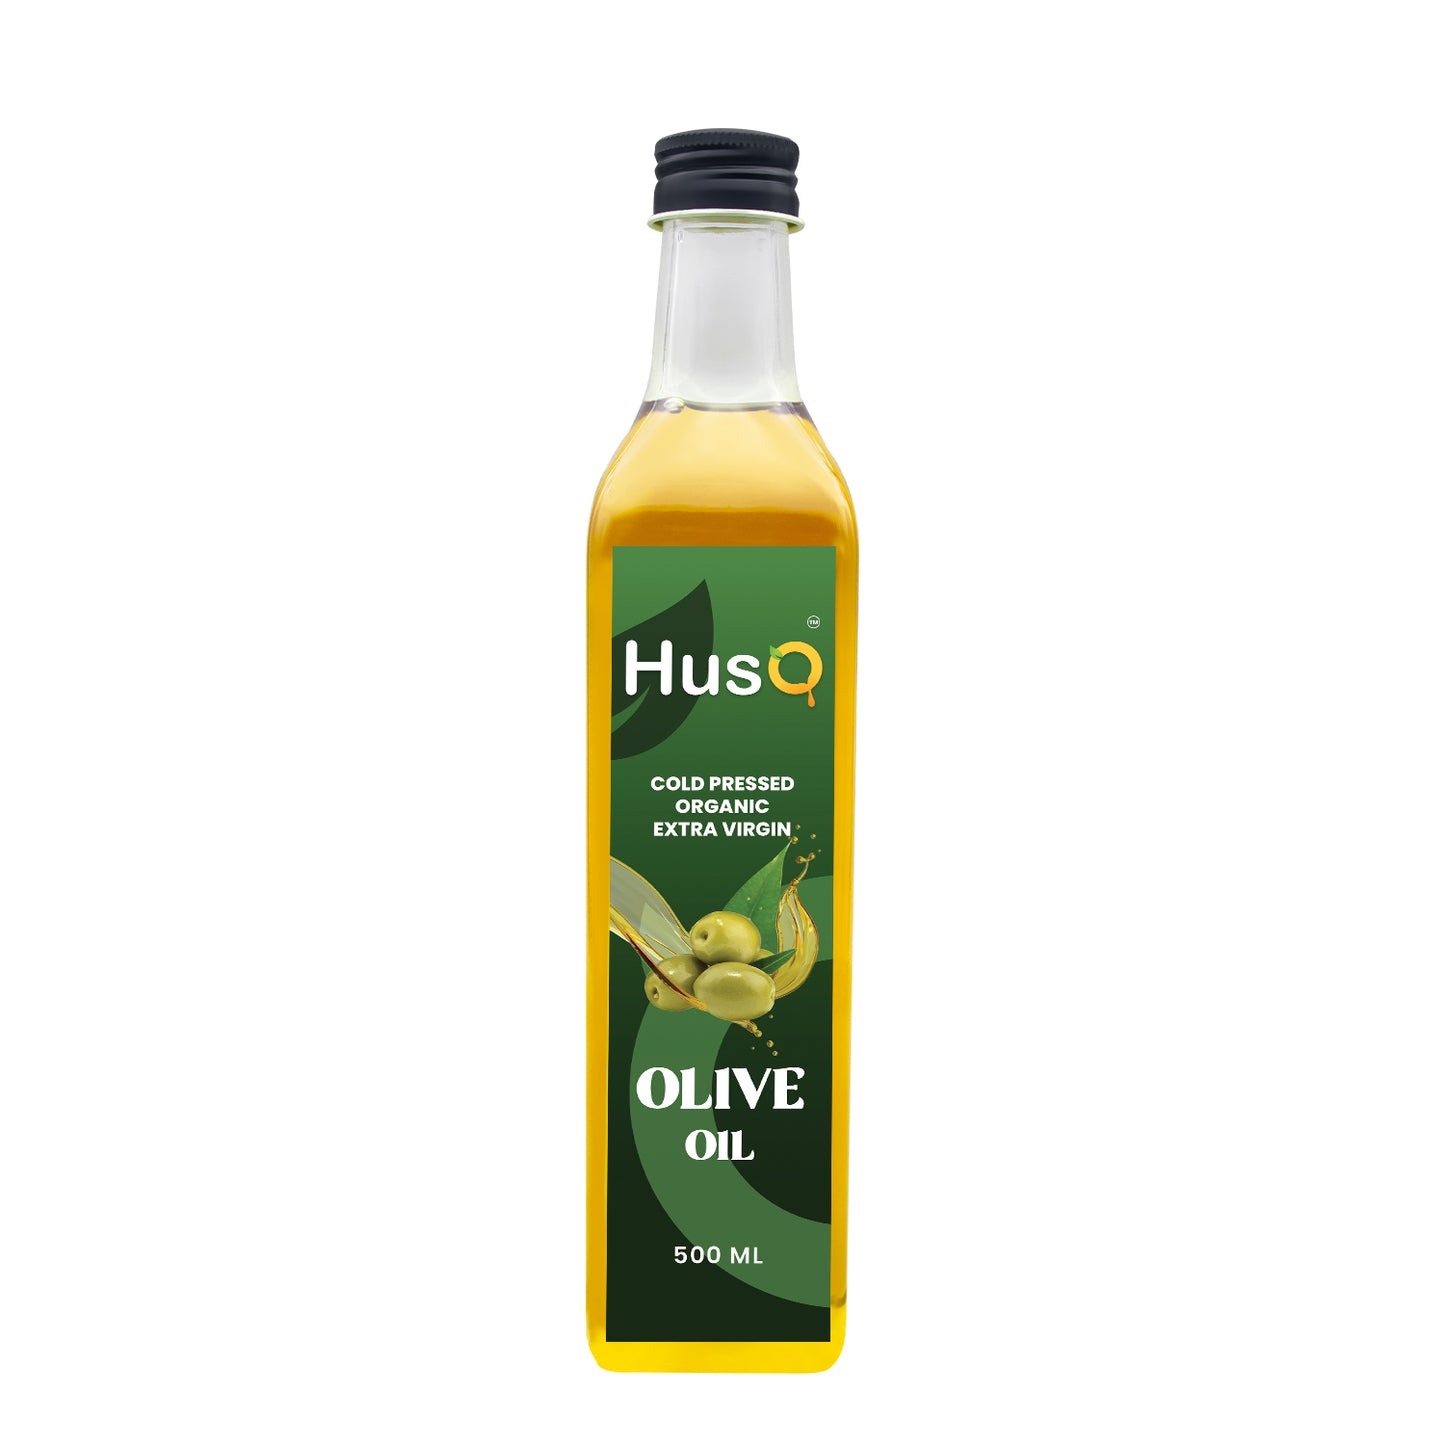 HusQ Olive Oil